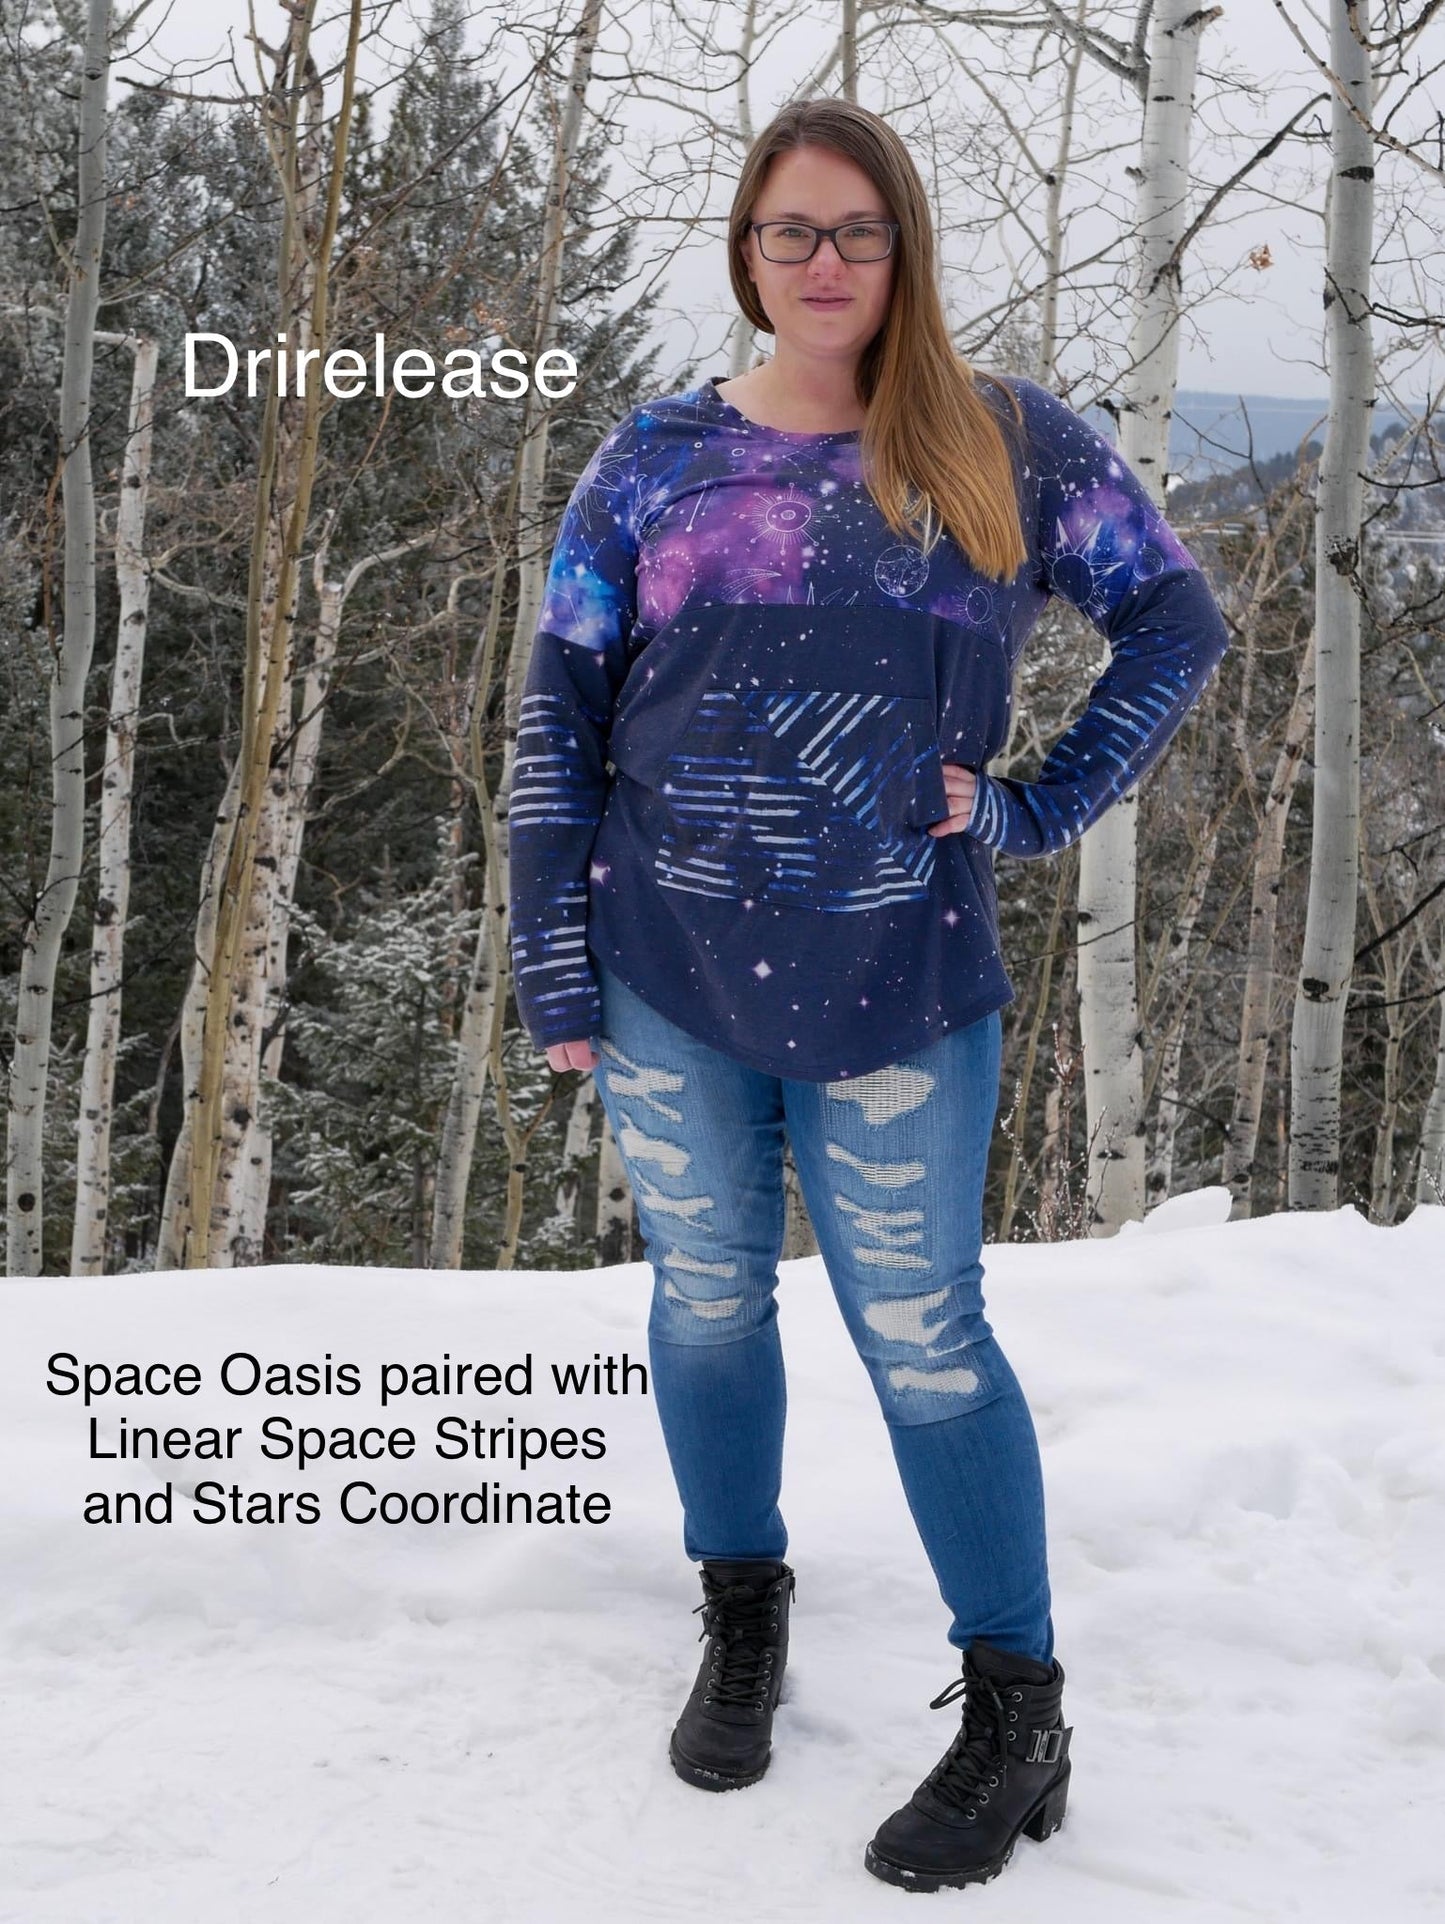 Drirelease: Linear Space Stripes